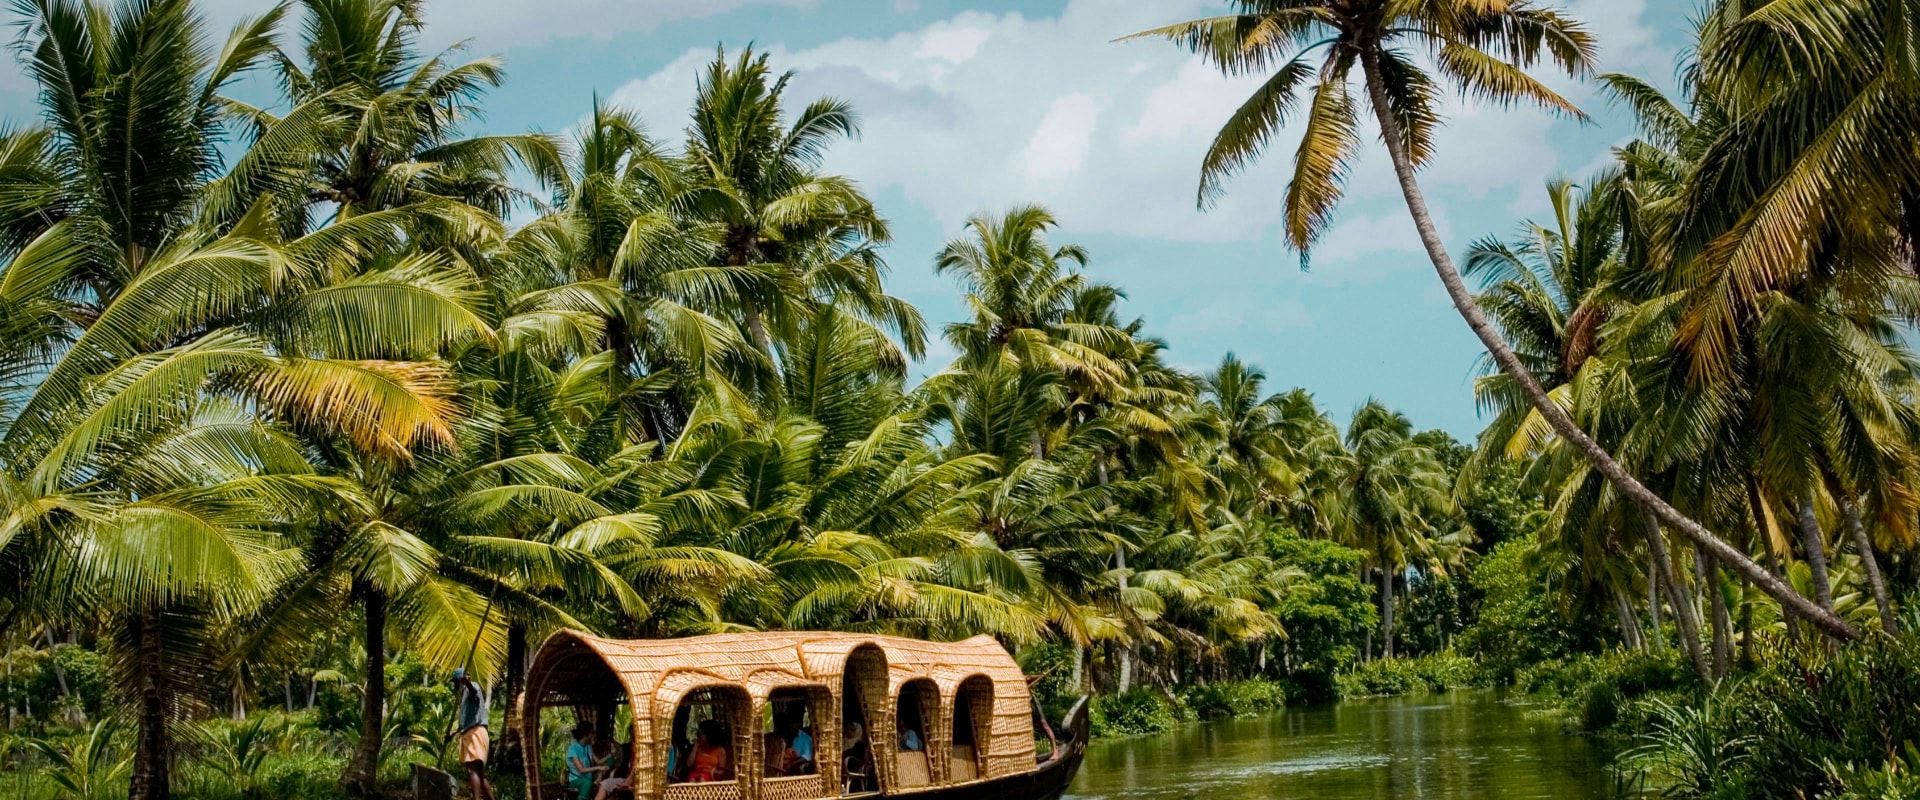 5 Days in Kerala: An Unforgettable Journey